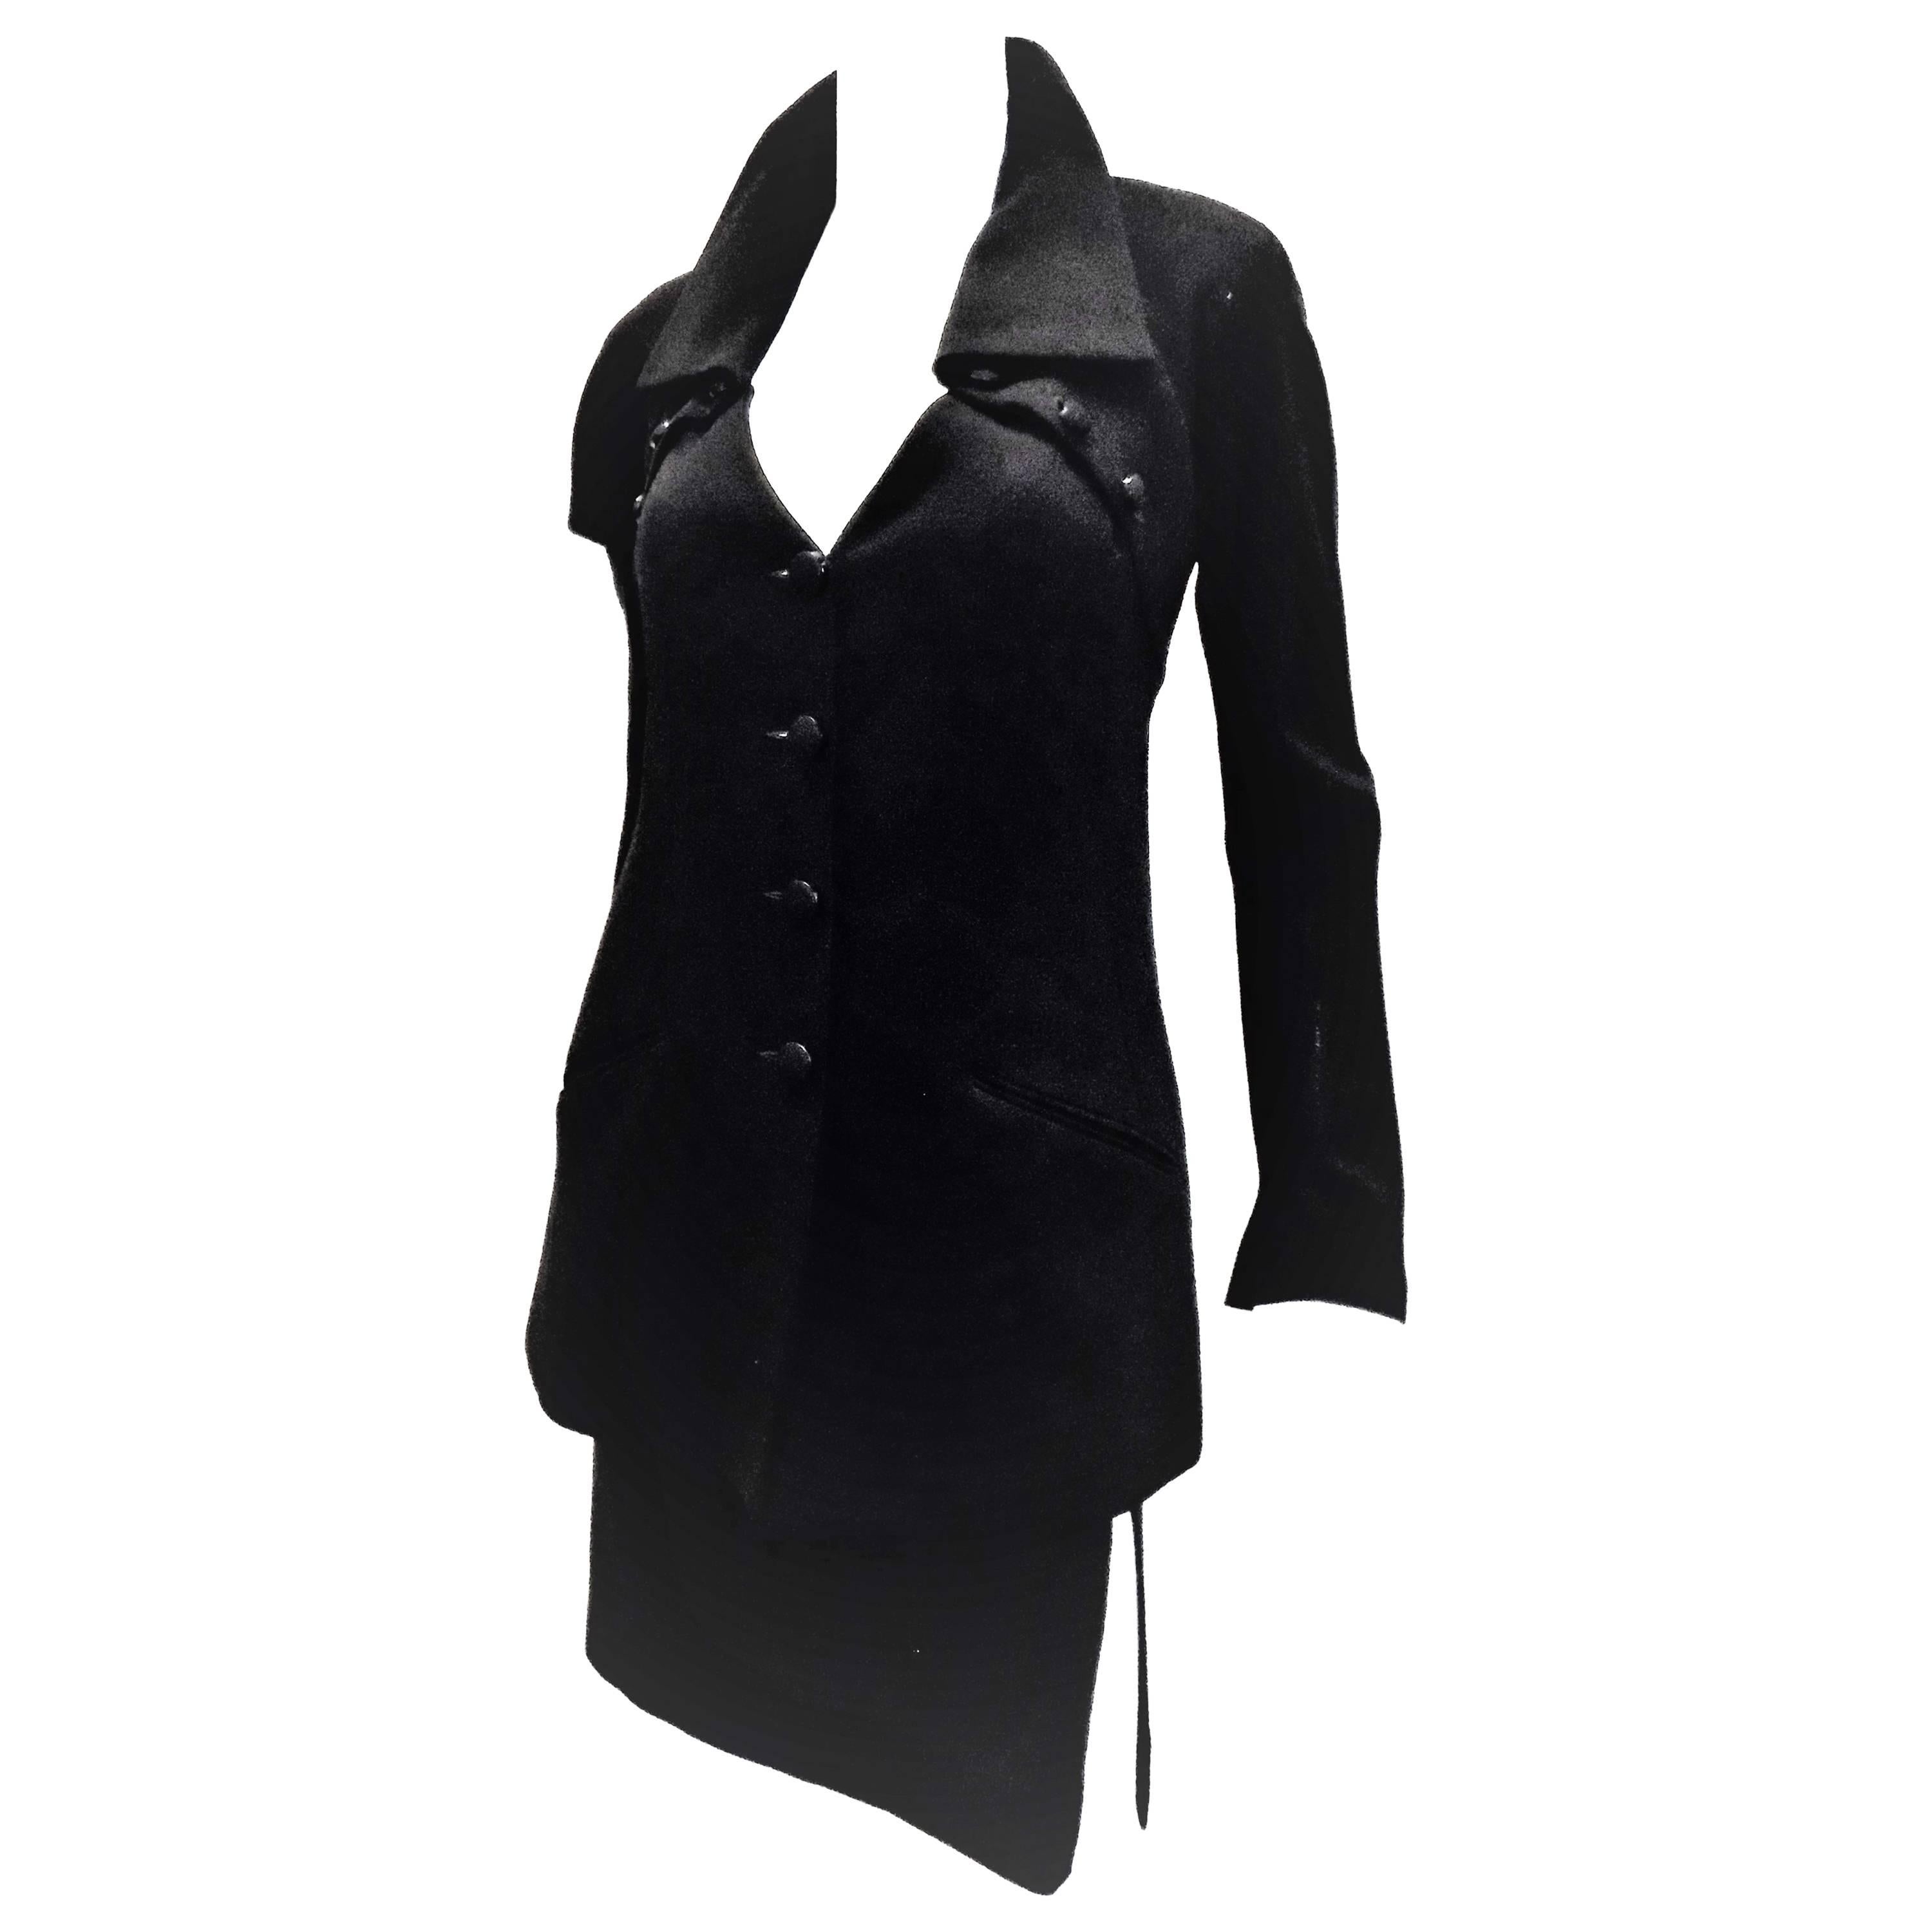  Chloe by Karl Lagerfeld Vintage black skirt suit  For Sale